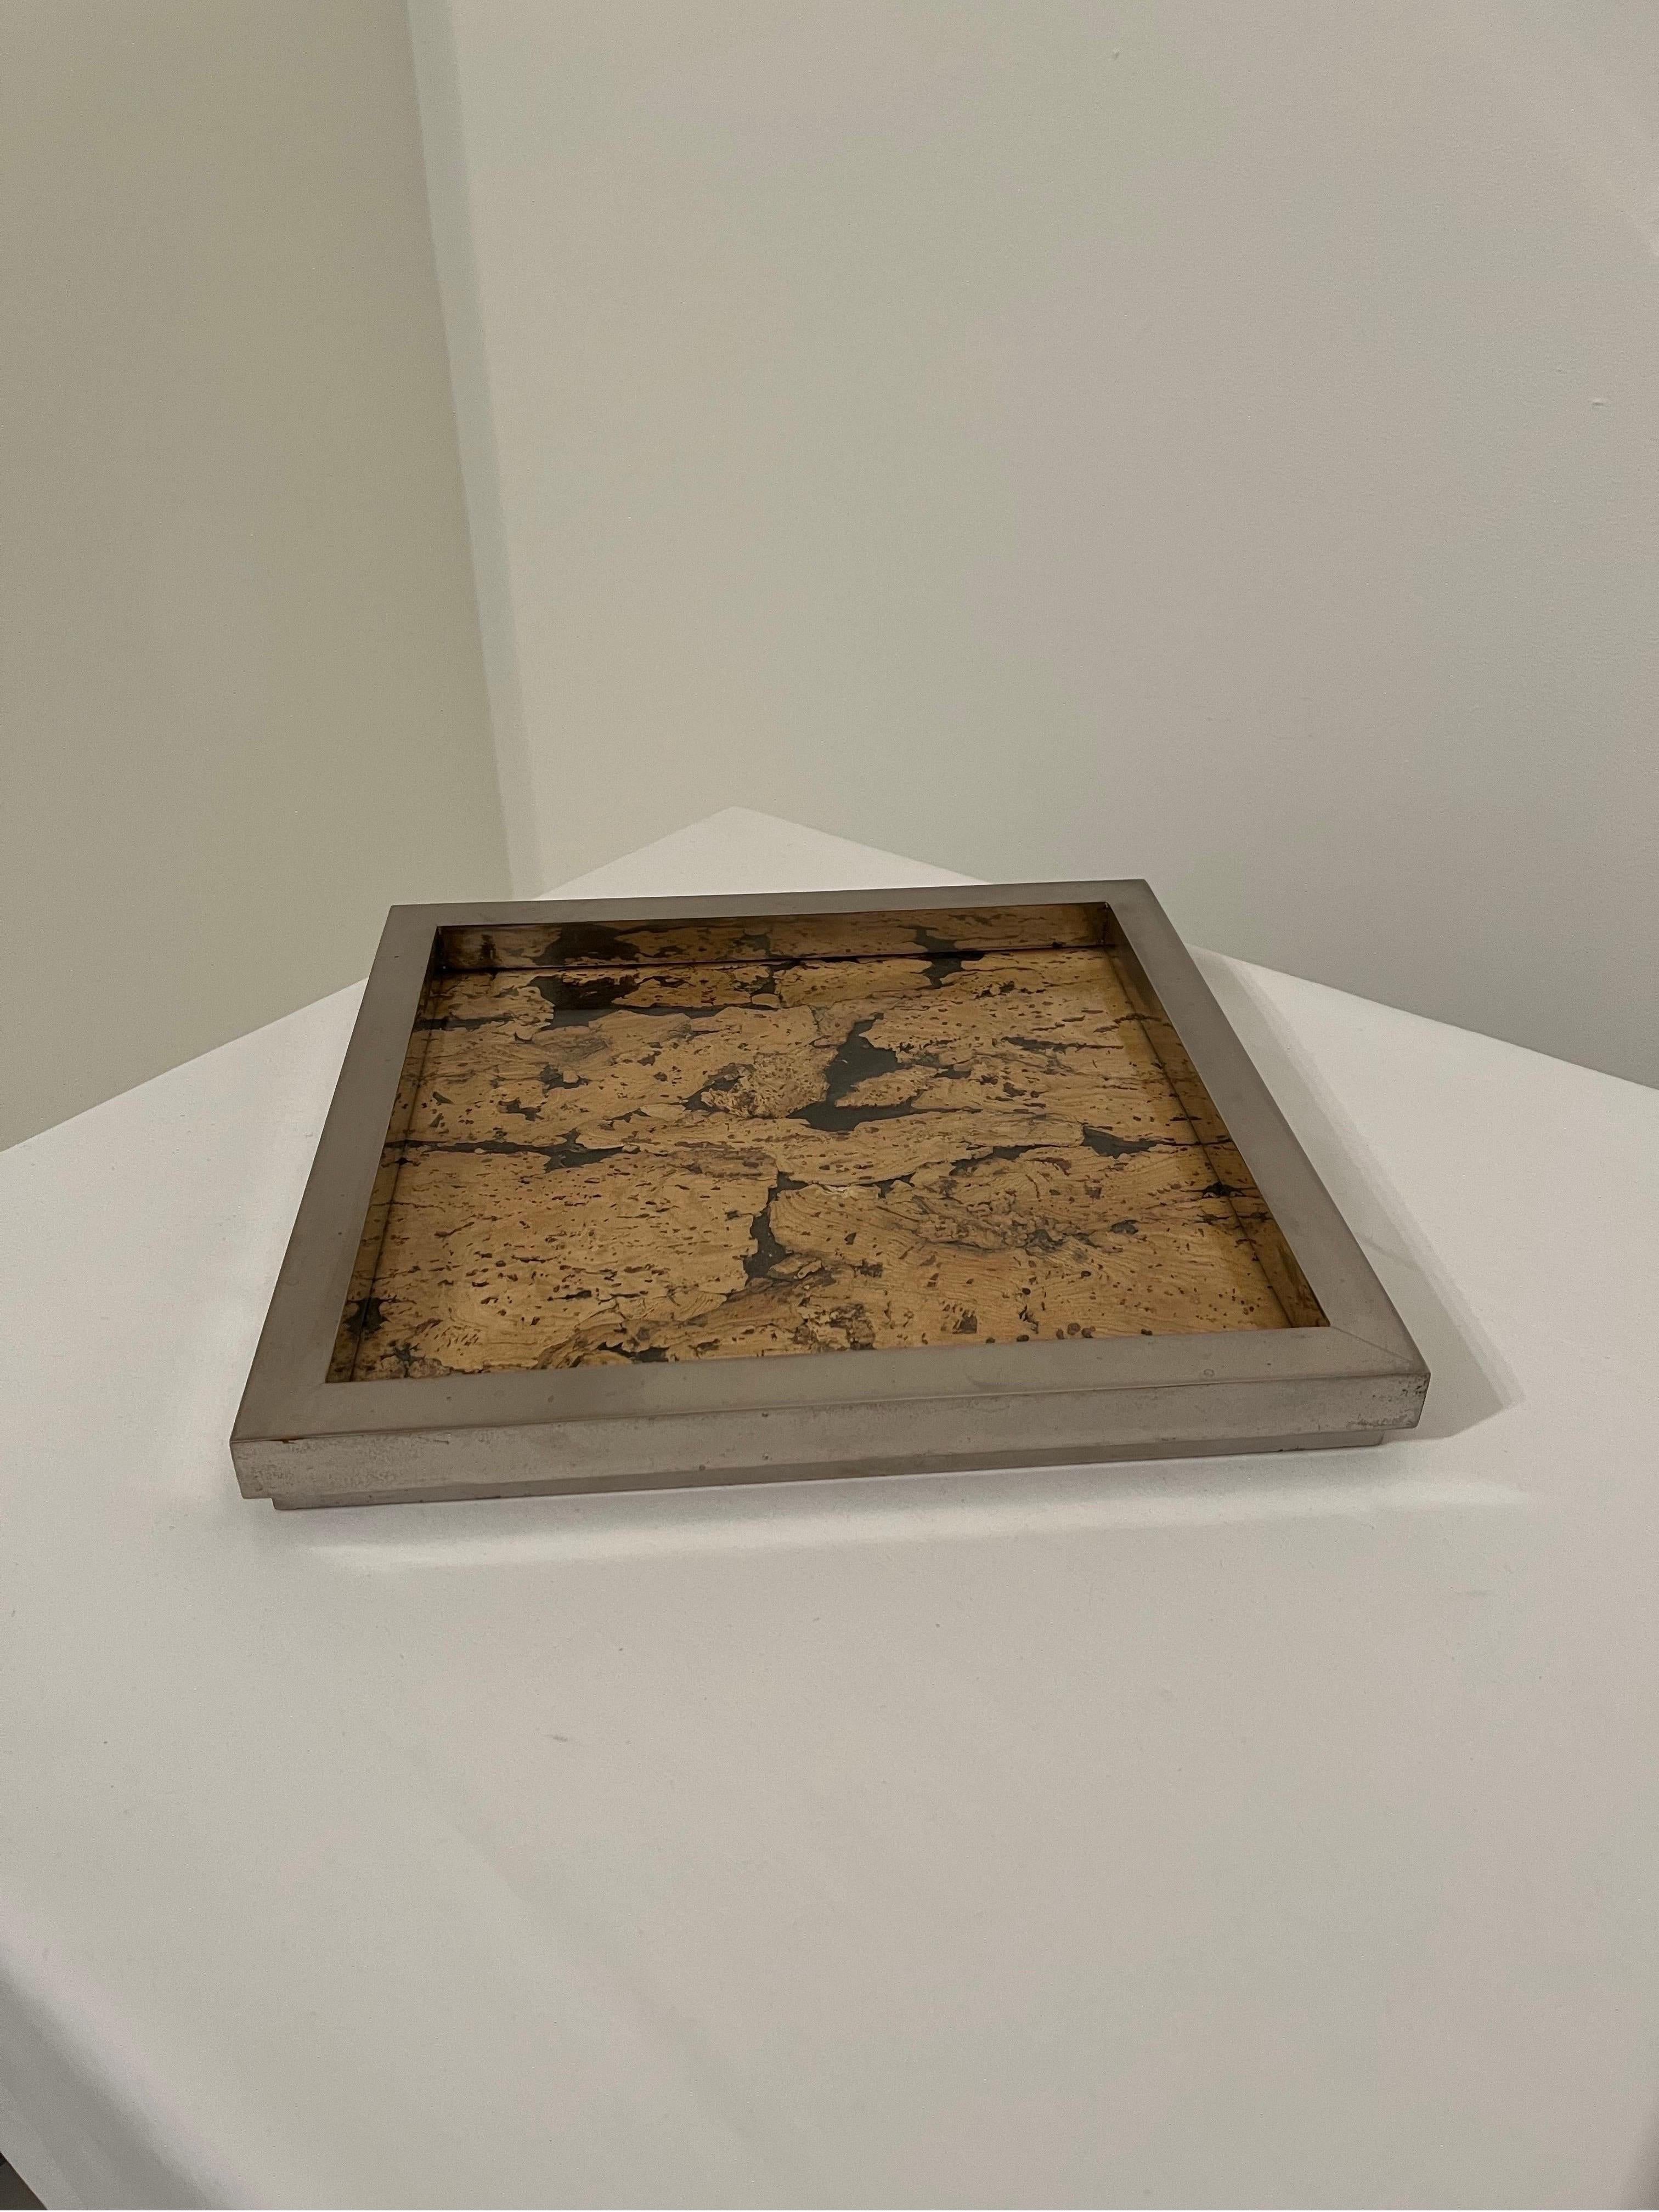 Verchromtes Messing-Tablett mit Rahmen von Romeo Rega. 
Korken mit Glasaufsatz und Acrylboden. 
Alterung und Flecken auf Chrom wie gezeigt, um innere und äußere des Rahmens. 